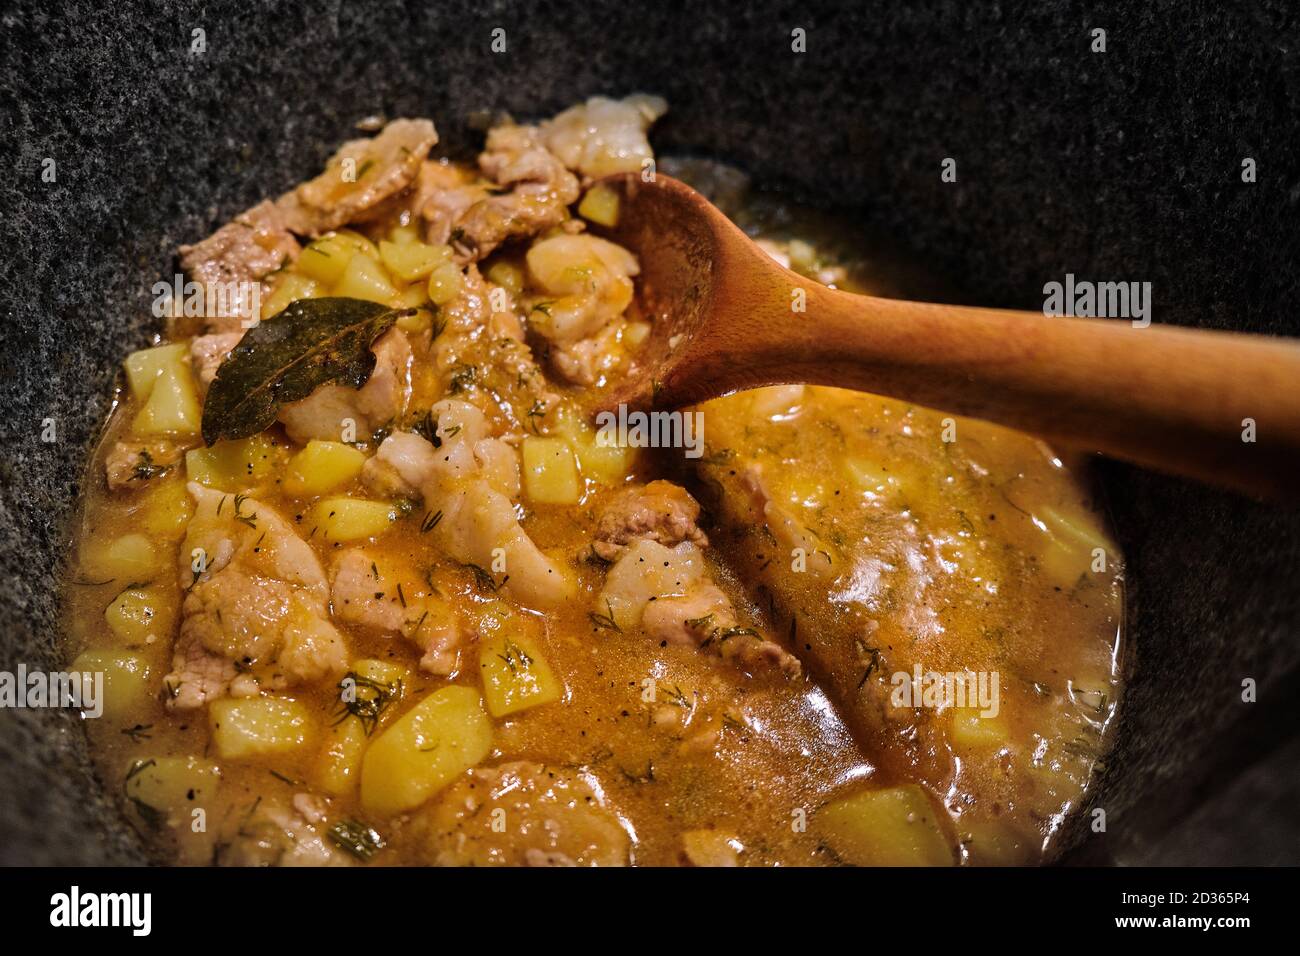 Kartoffeln und Fleisch in einem hohen Topf einkochen. Ein Holzlöffel mischt  das Ragout mit der Brühe. Lorbeerblatt in einem Eintopf von Kartoffeln und  Rindfleisch. Draufsicht auf coo Stockfotografie - Alamy